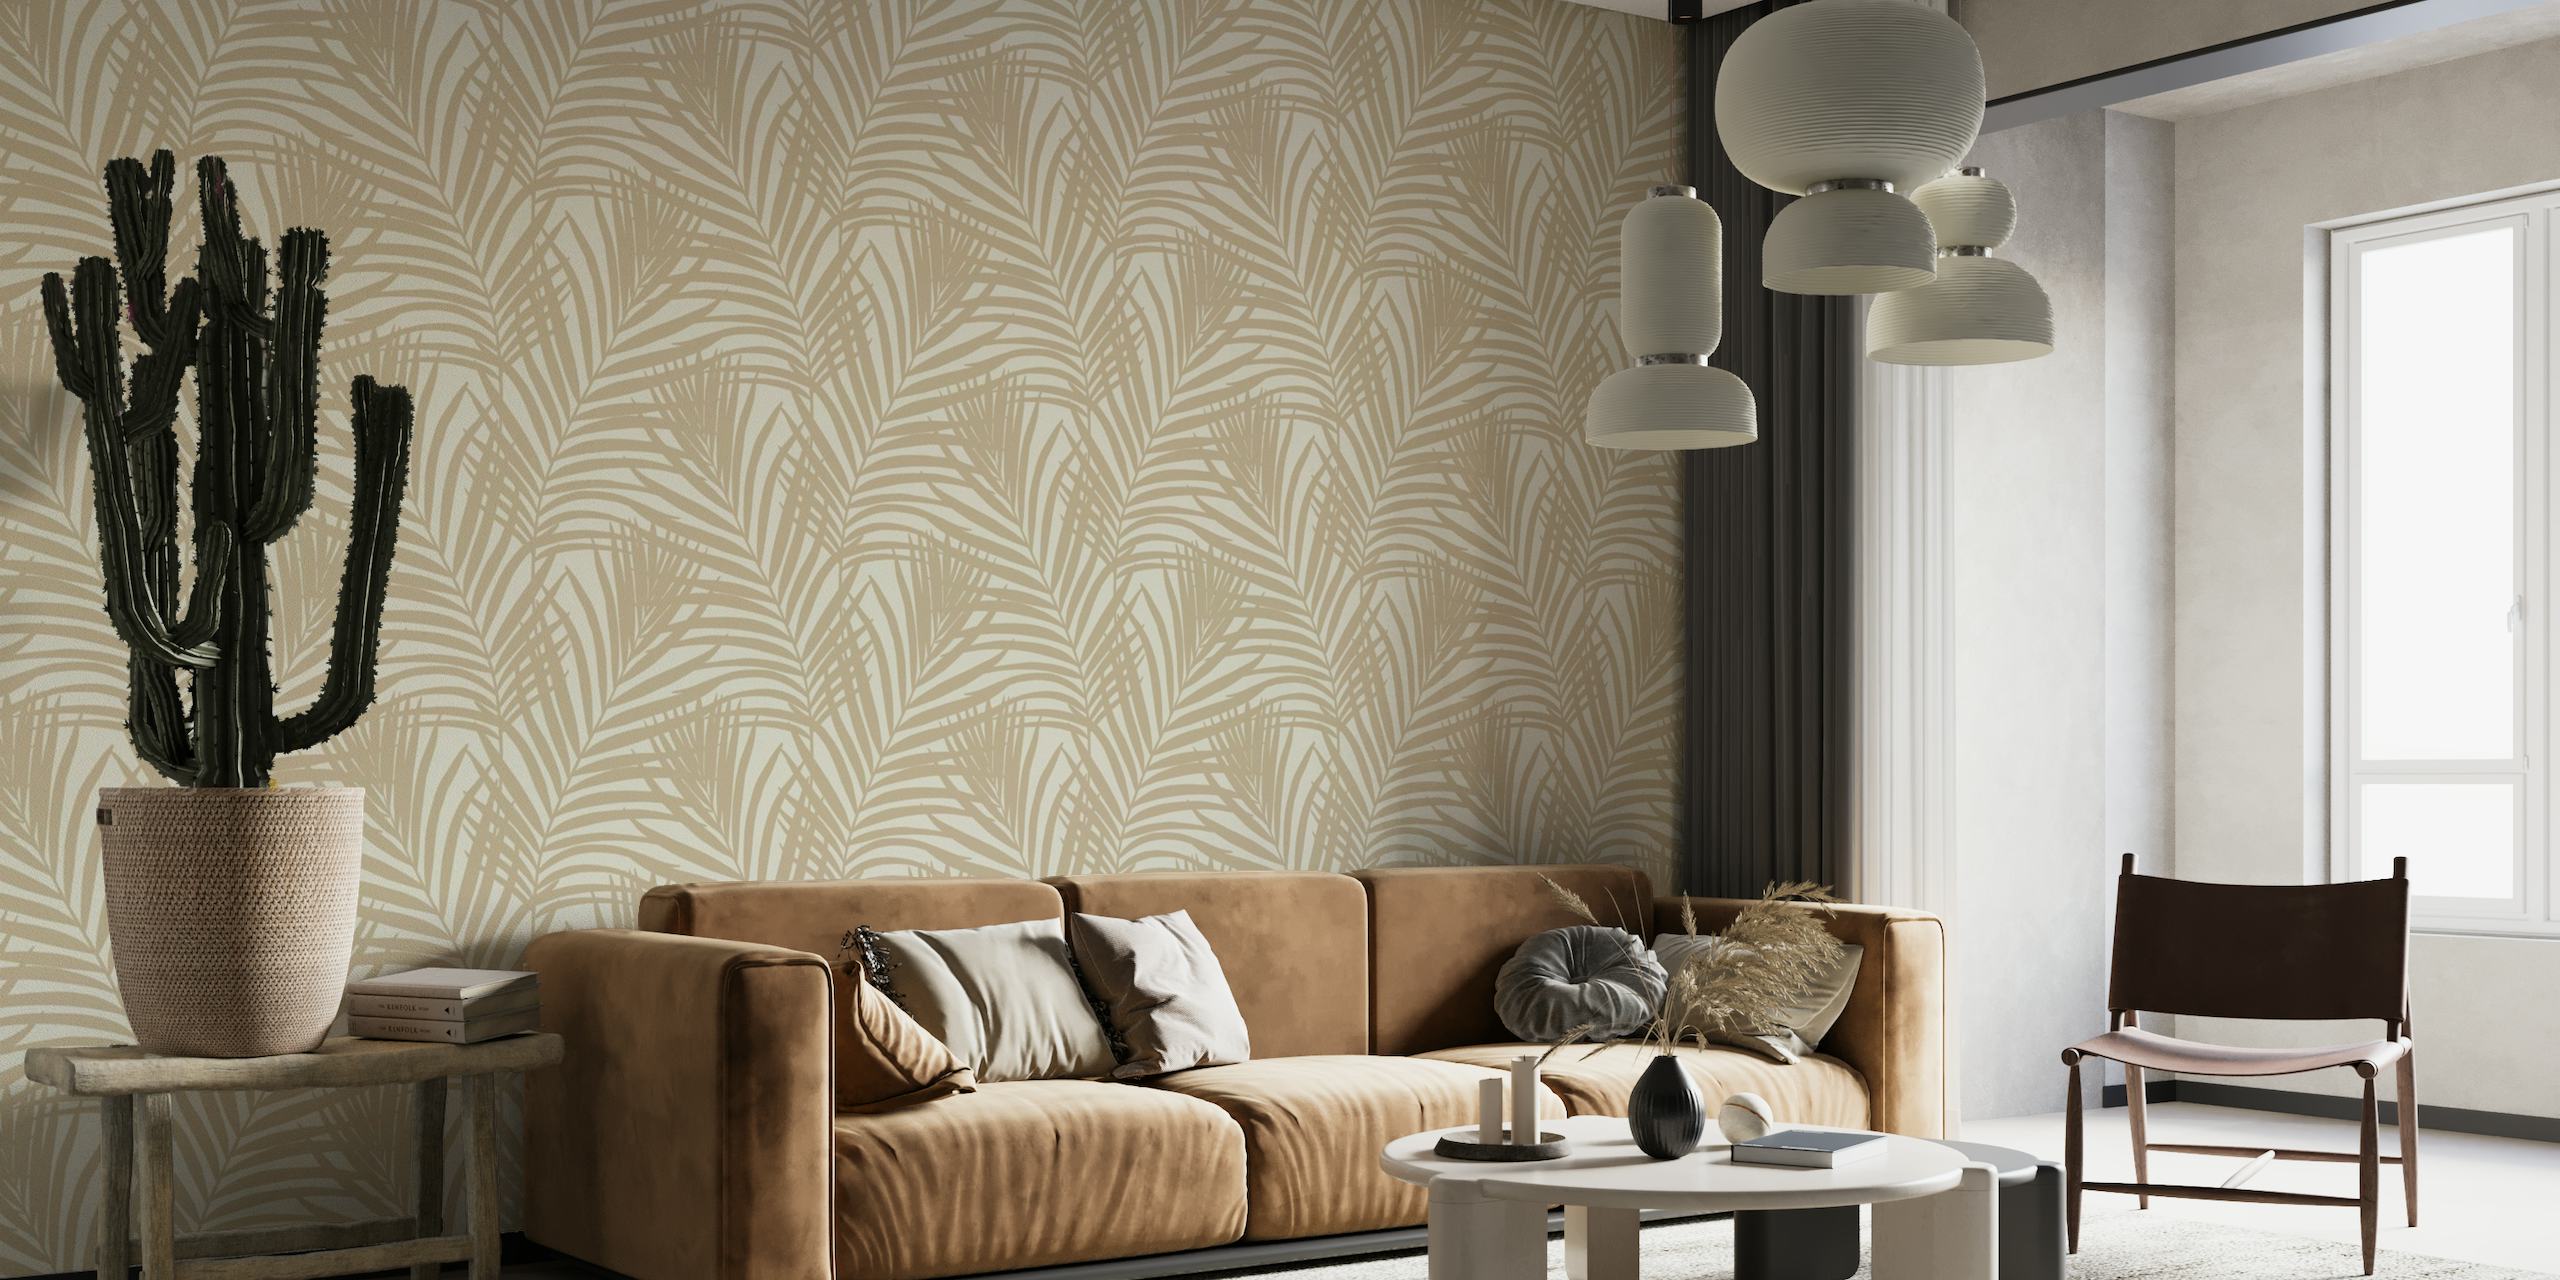 Coastal Palm Leaves - Warm Minimalist 2 wallpaper